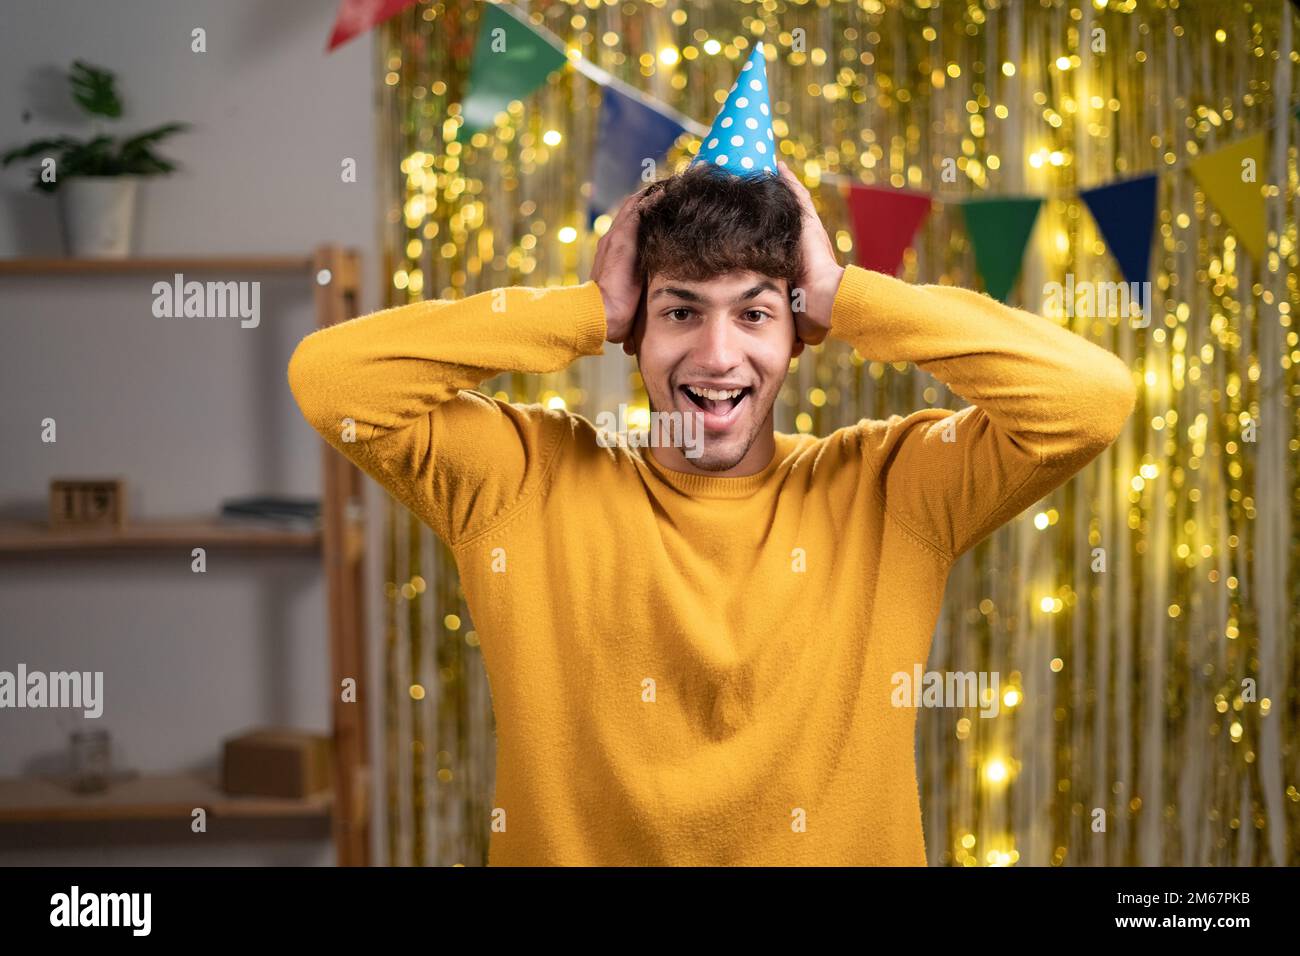 Nahaufnahme Foto eines lustigen Mannes in festlicher Hasslaune zuhören positive Nachrichten offener Mund Arme am Kopf Kleidung Freizeit gelb warmer Pullover. Geburtstagsfeier zu Hause Stockfoto